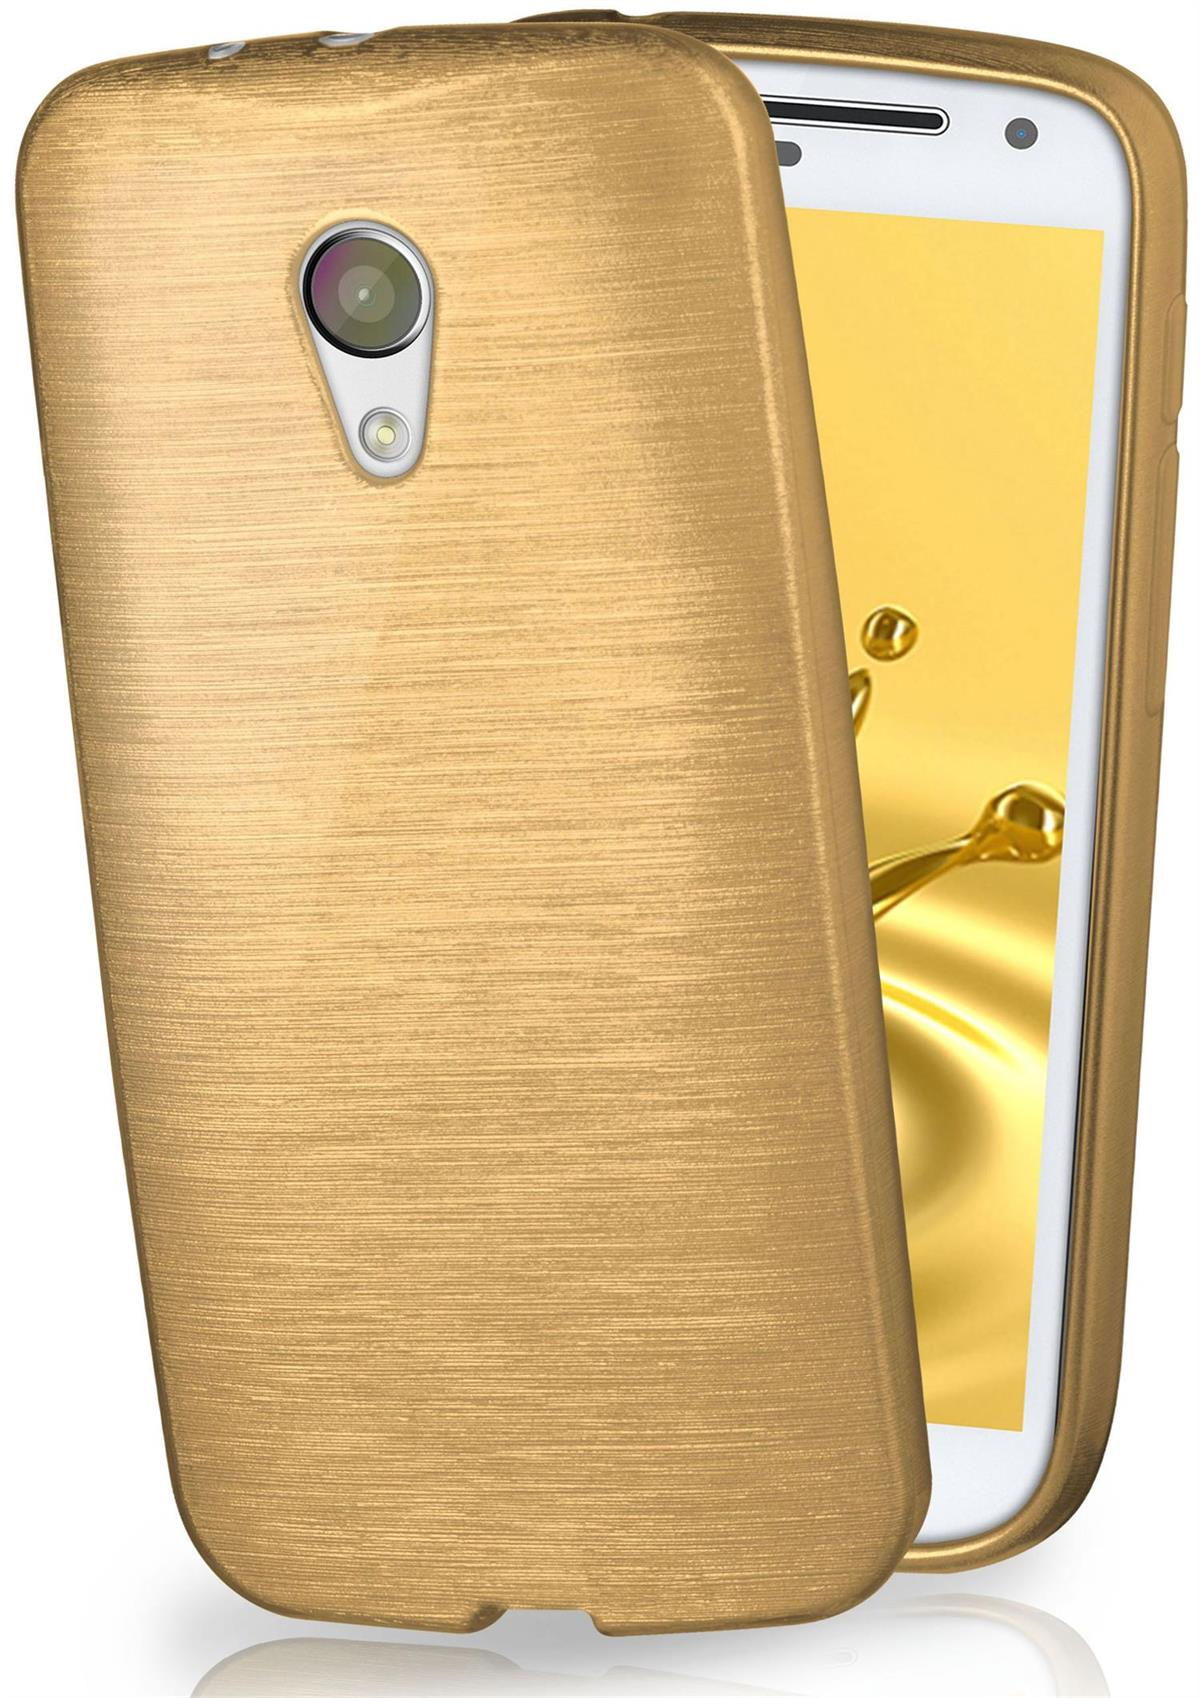 MOEX Backcover, Motorola, Ivory-Gold Moto Brushed Case, G2,